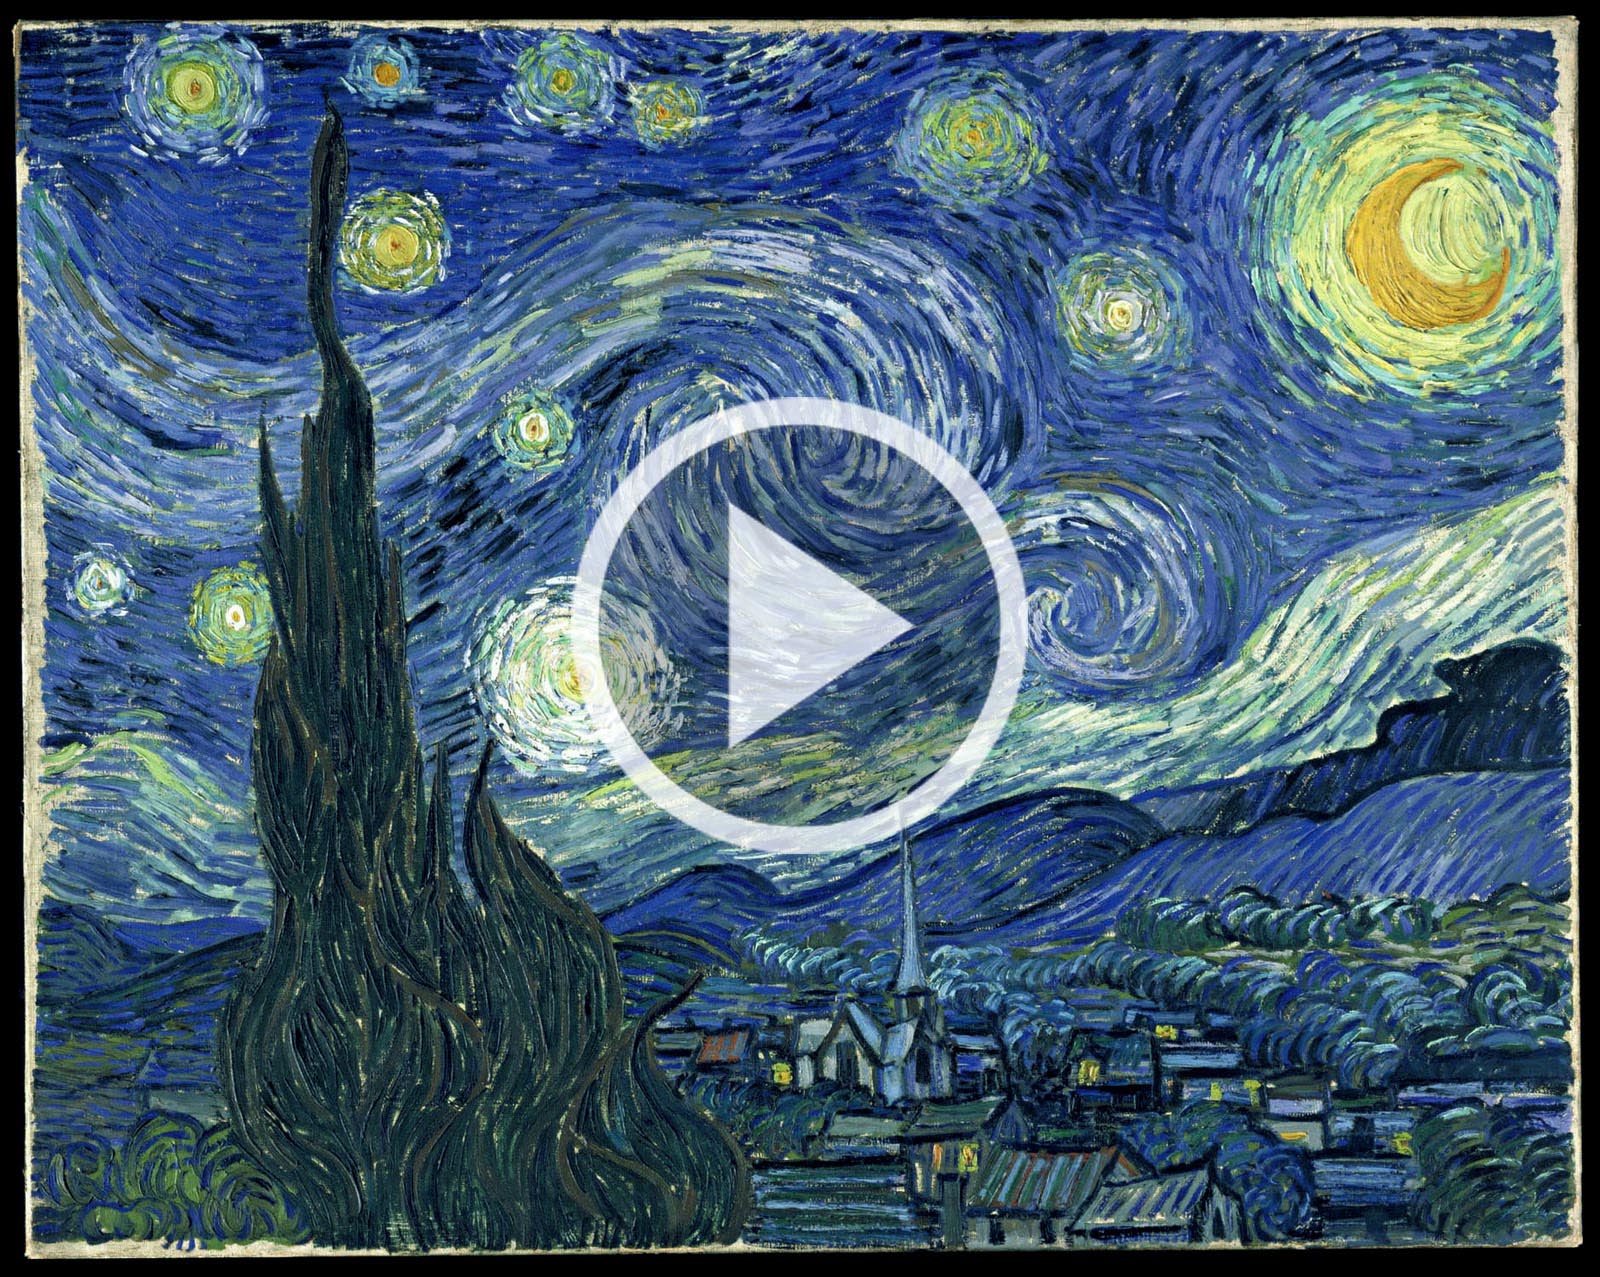 Video - In movimento la notte stellata di Van Gogh e i vortici